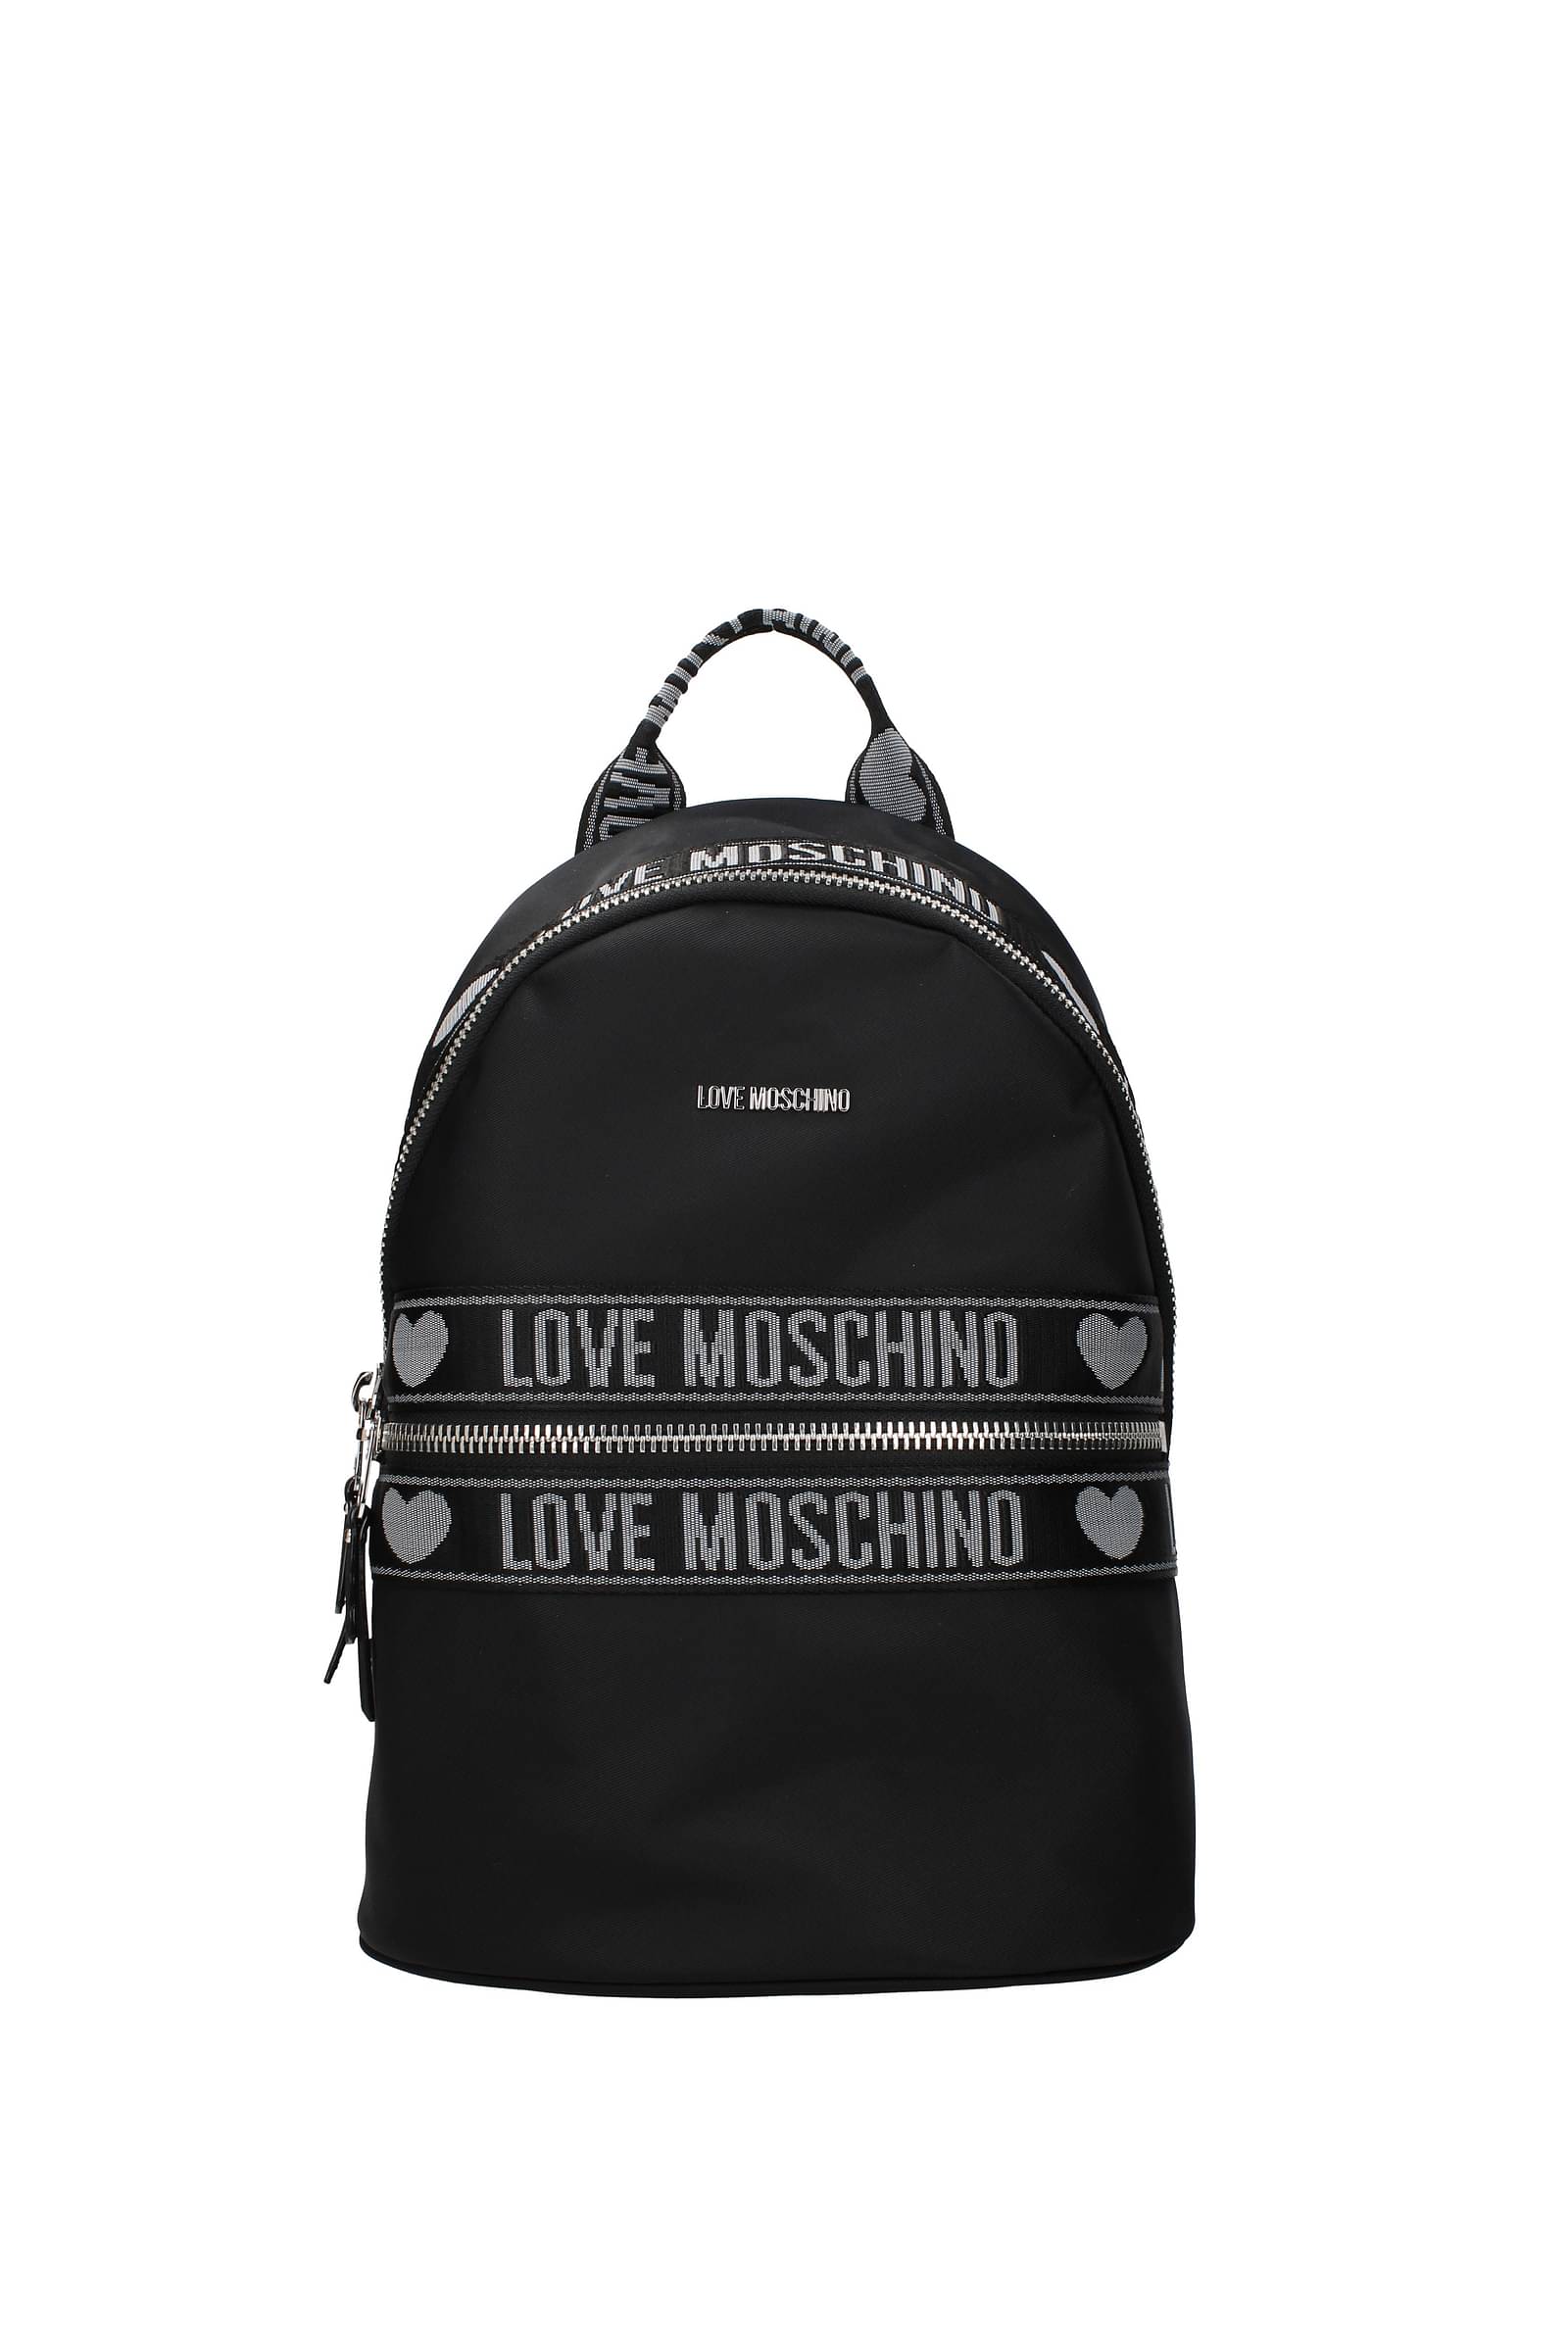 Women Bags Love Moschino Women Backpacks Love Moschino Women Backpacks Love Moschino Women Backpack LOVE MOSCHINO black 